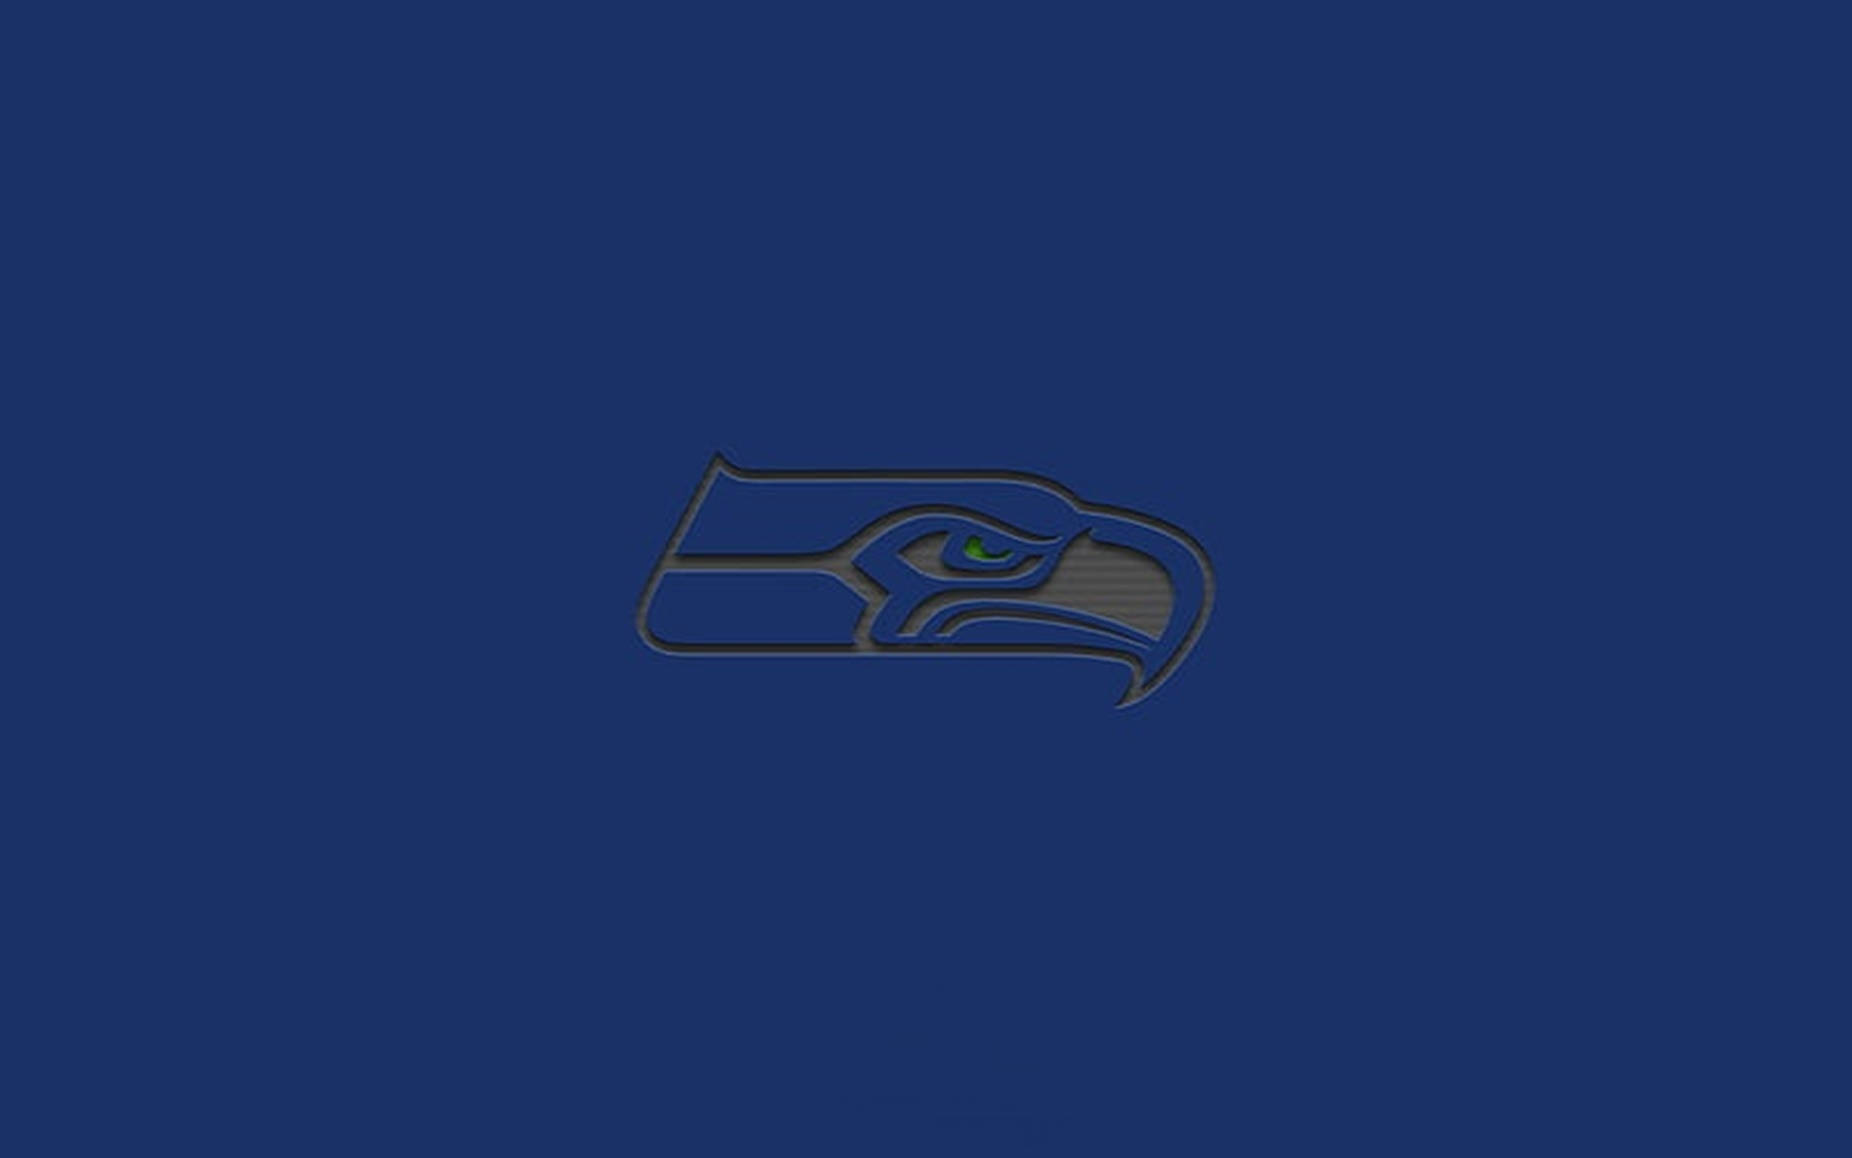 Logotipode Los Seahawks En Azul Oscuro. Fondo de pantalla